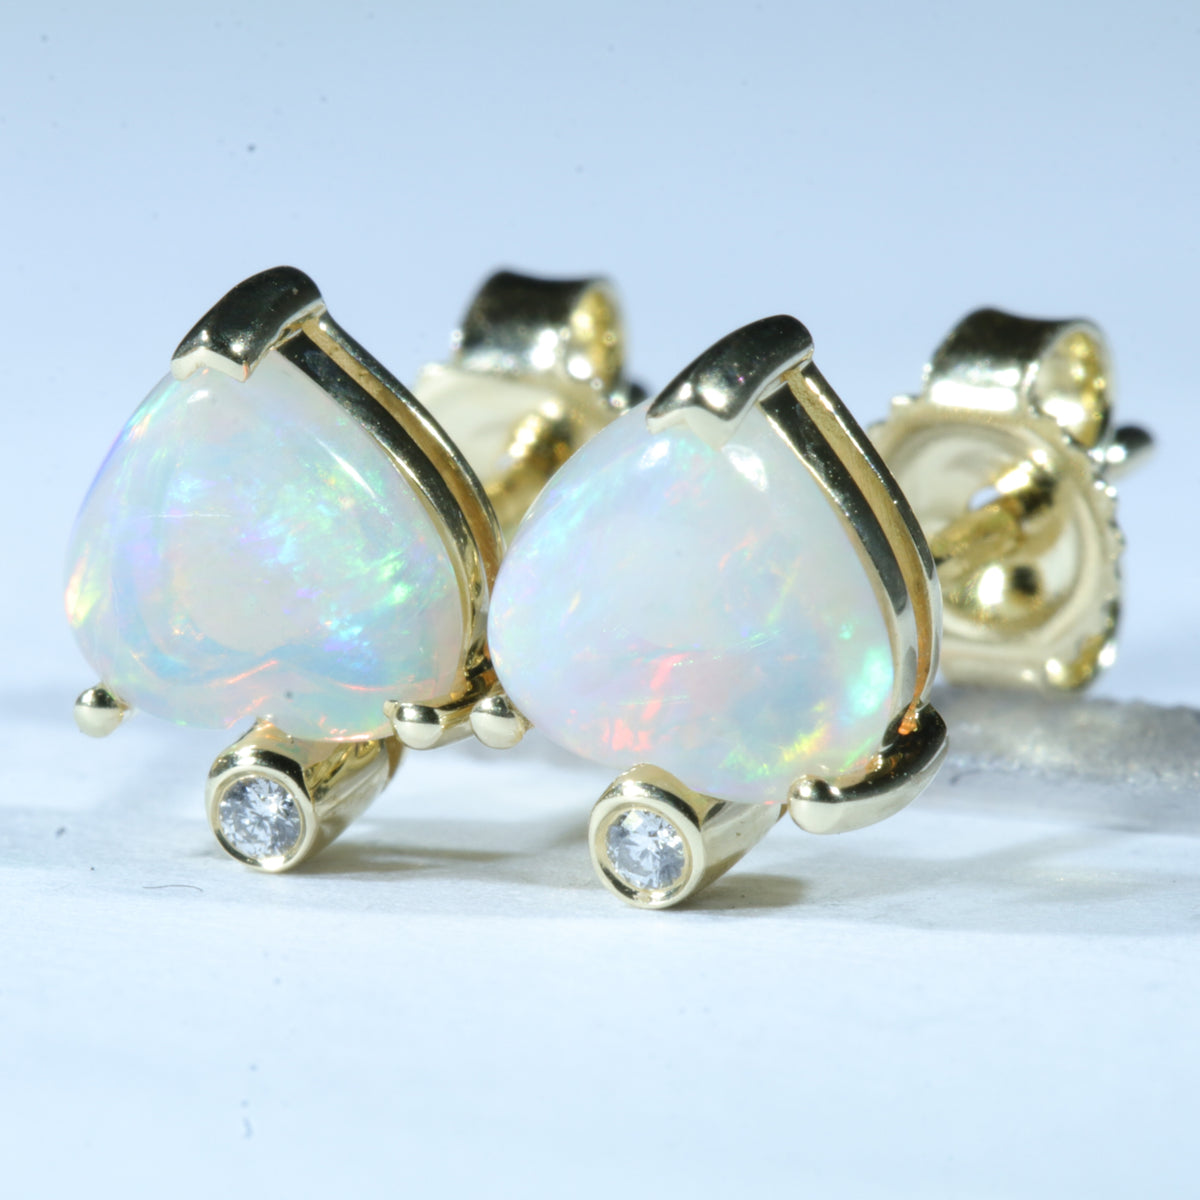 Australian Crystal Opal Gold Earrings - 14k Gold